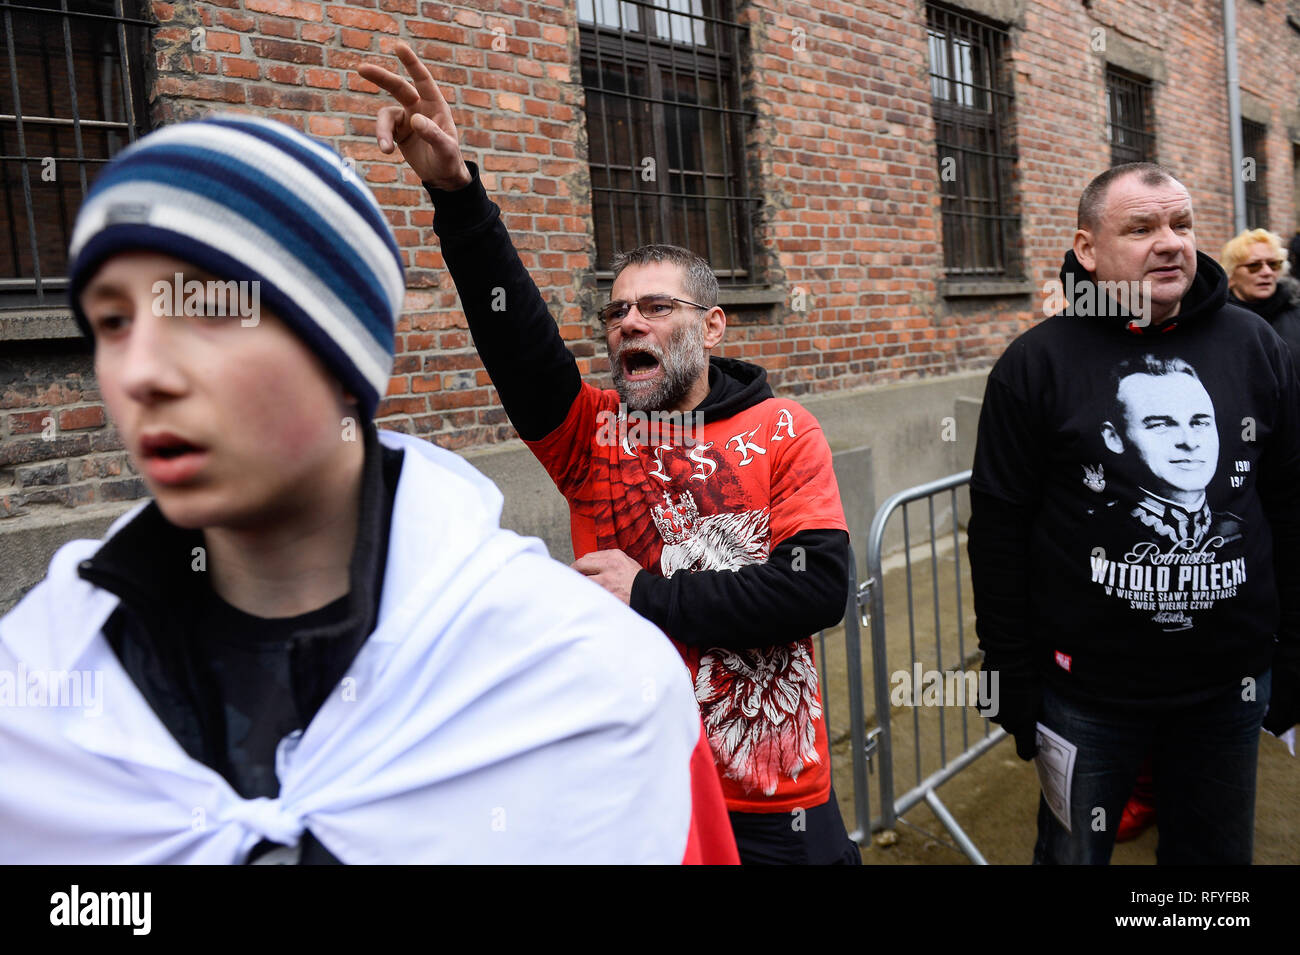 Des militants d'extrême droite polonais sont vu assister à une extrême droite mars mémorial pour rendre hommage aux Polonais qui ont été tués à l'ancien camp de la mort nazi d'Auschwitz-Birkenau allemande au cours de la 74e anniversaire de la libération d'Auschwitz. En novembre 2015, Piotr Rybak brûlé une marionnette sous la forme d'un Juif orthodoxe au cours d'une extrême droite propest à Wroclaw. Banque D'Images